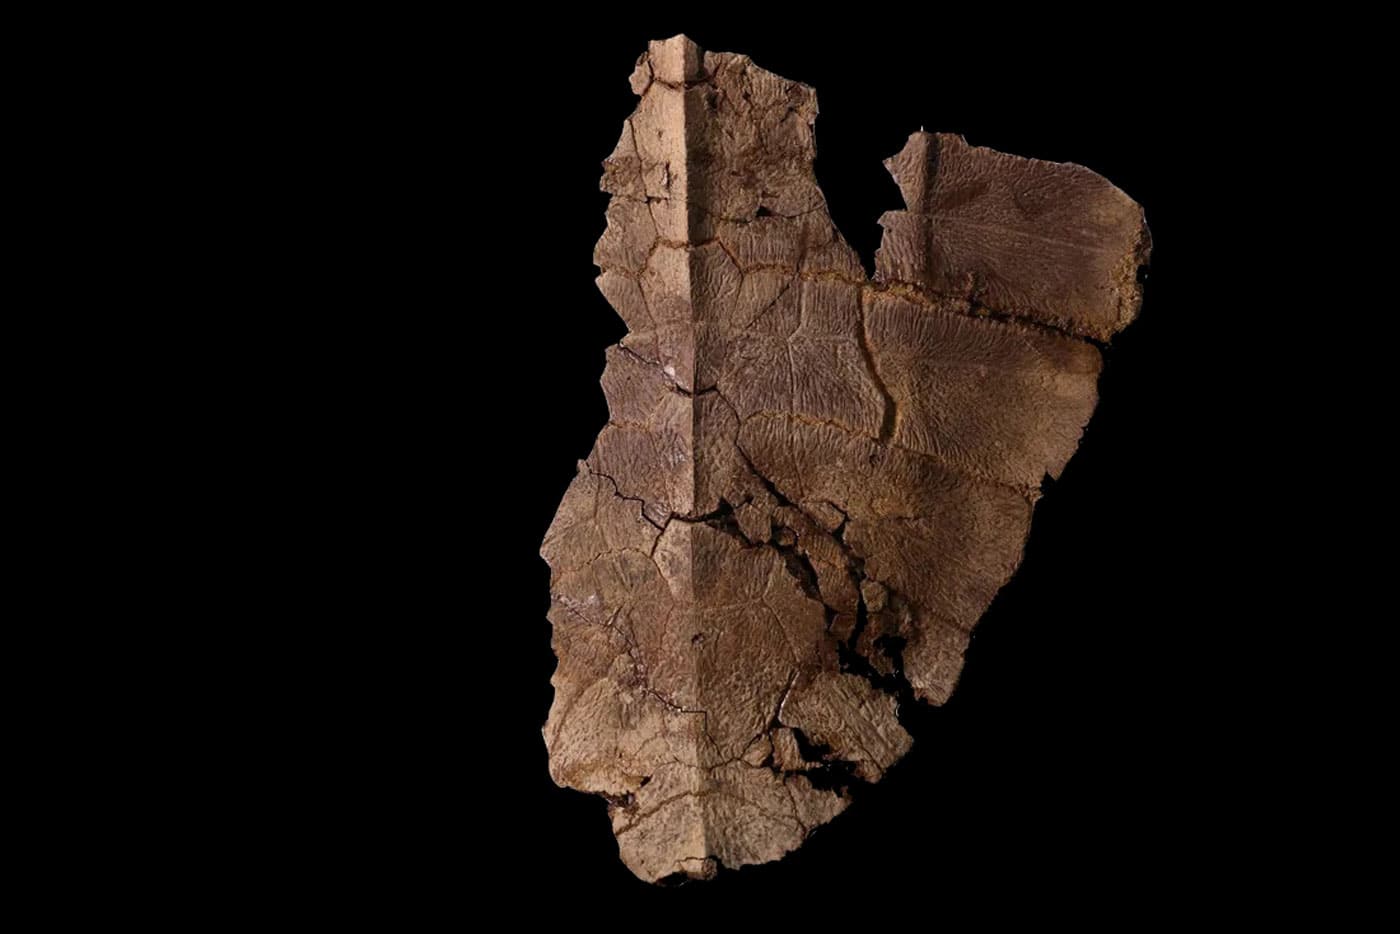 Los científicos encontraron ADN en un antiguo fósil de caparazón de tortuga